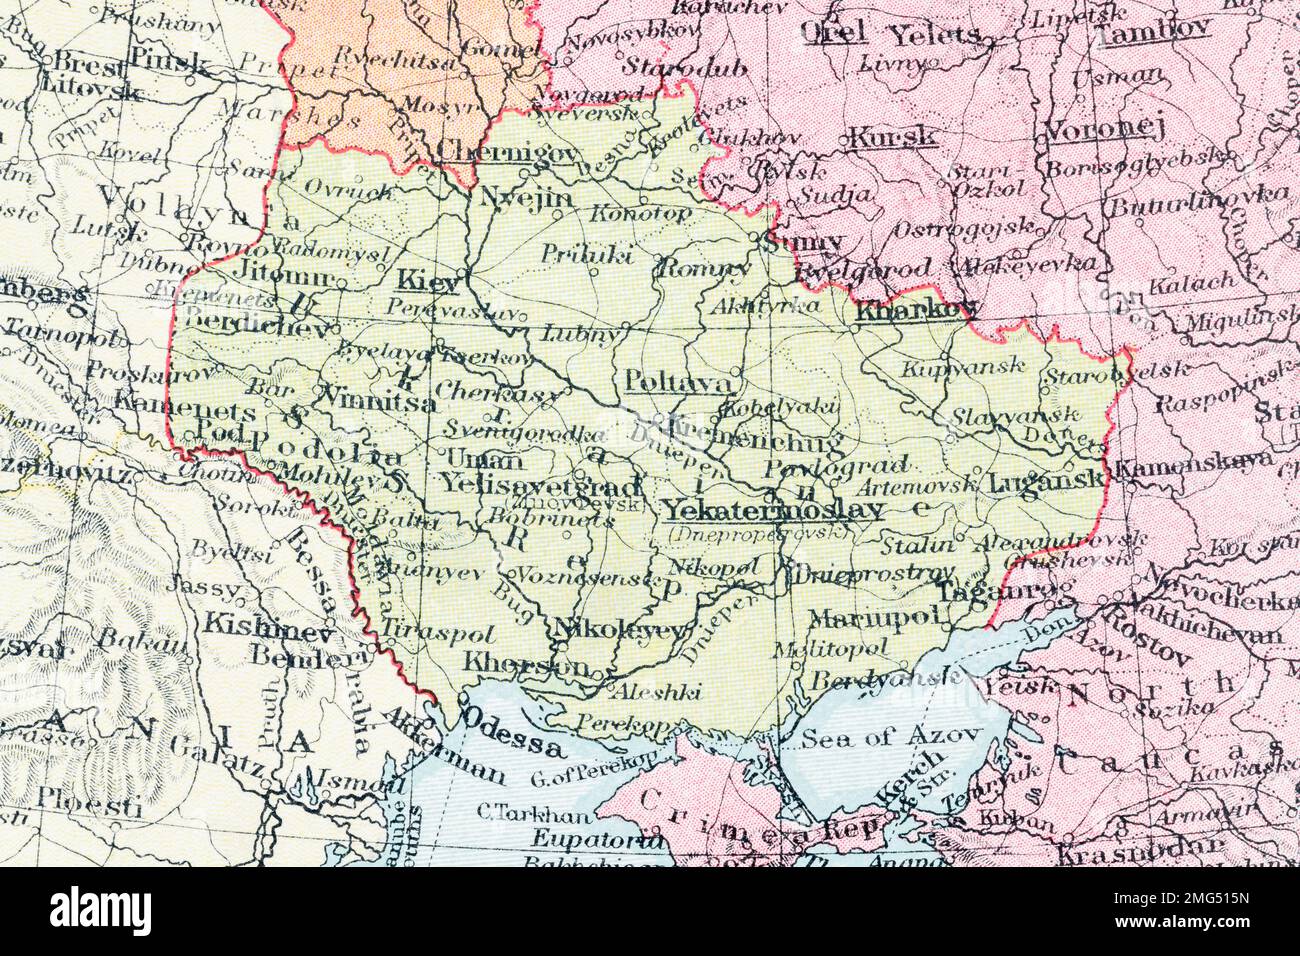 1935 atlas map of territorial boundaries of the Kiev Oblast, Kiev city & Odessa - pre-WW2 & under Soviet control. Kiev in top left image quarter. Stock Photo